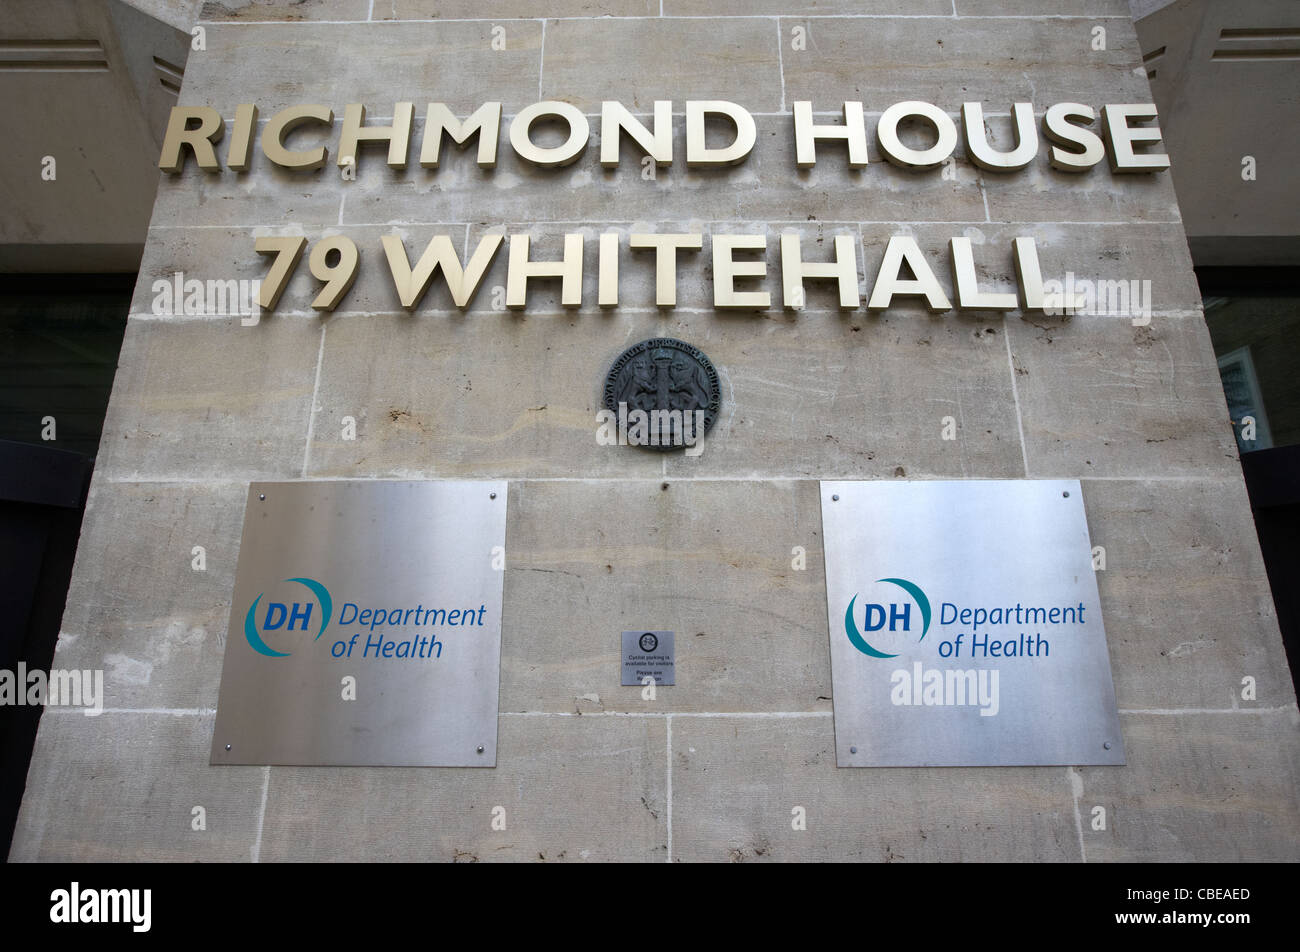 Richmond house Dipartimento della sanità del governo britannico edificio ufficiale whitehall Londra Inghilterra Regno Unito Regno Unito Foto Stock